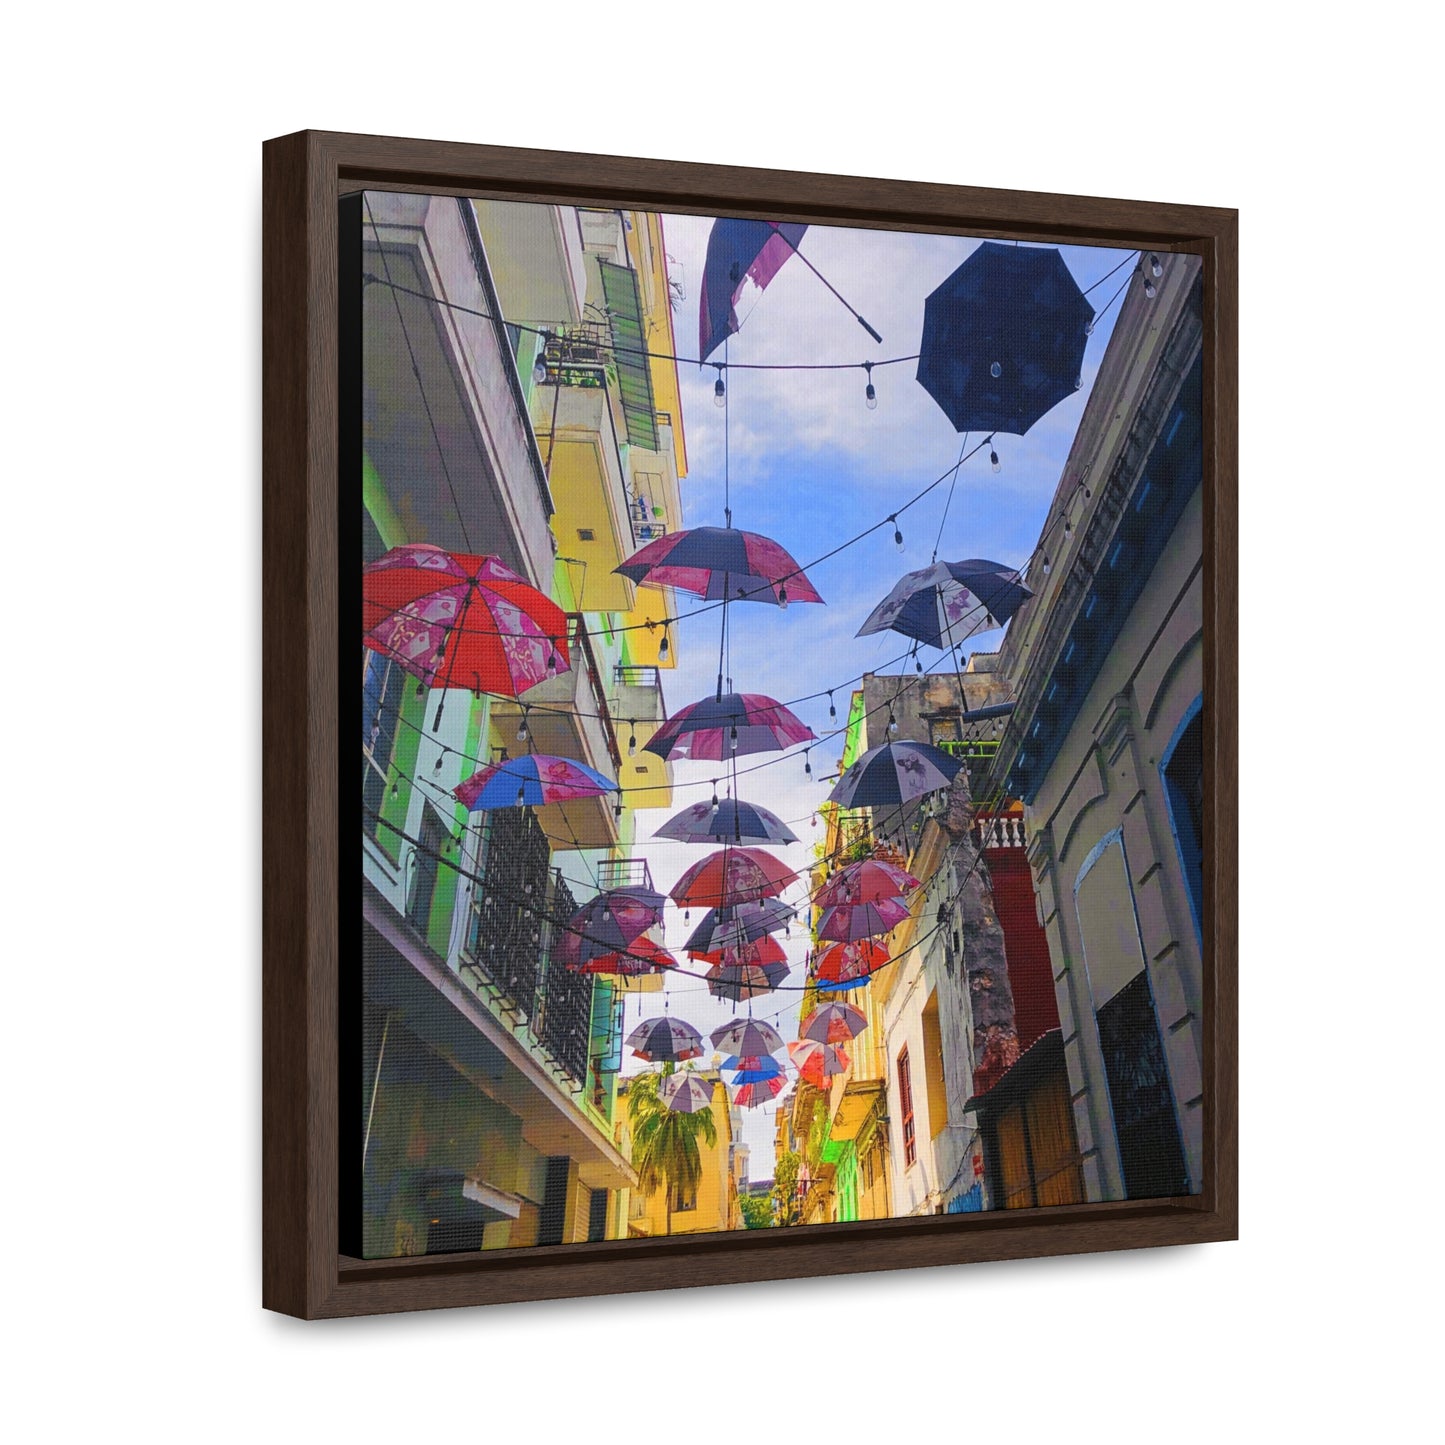 Umbrellas of Havana - Framed Gallery Canvas